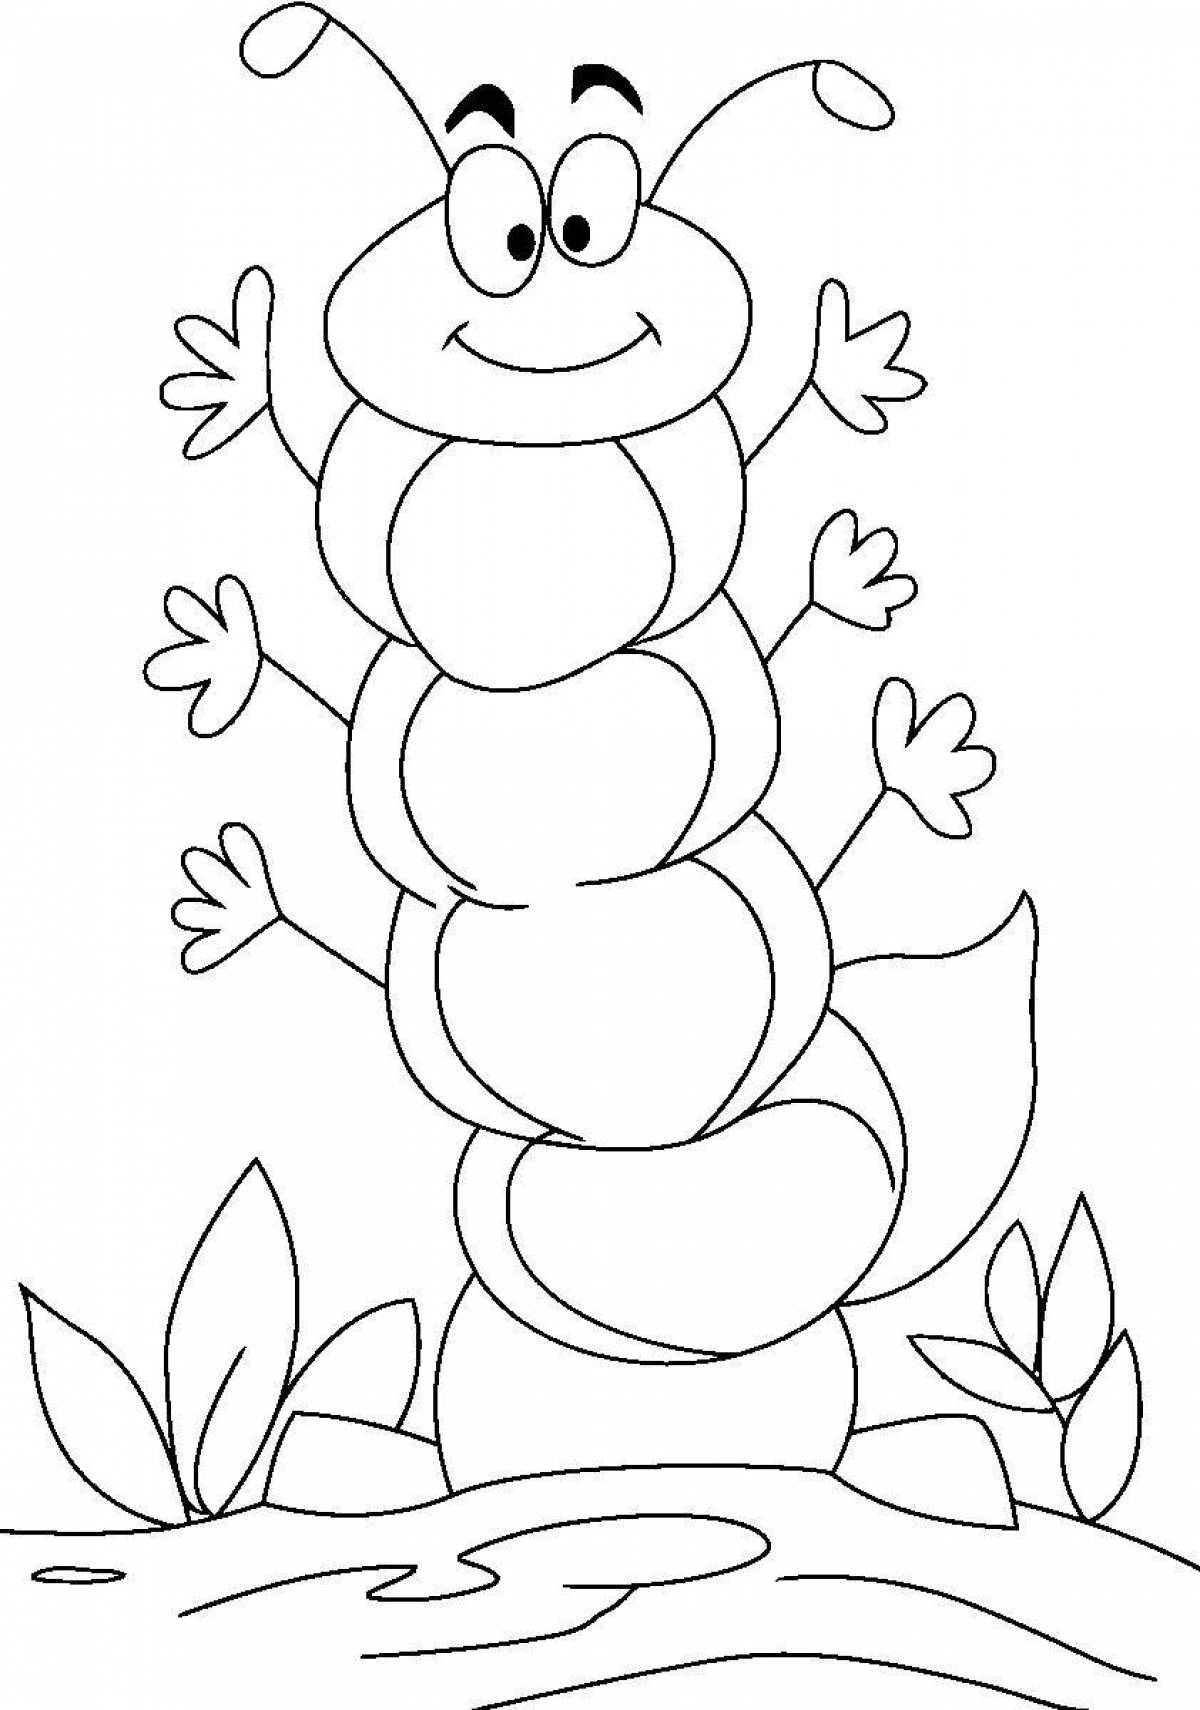 Wonderful caterpillar coloring book for preschoolers